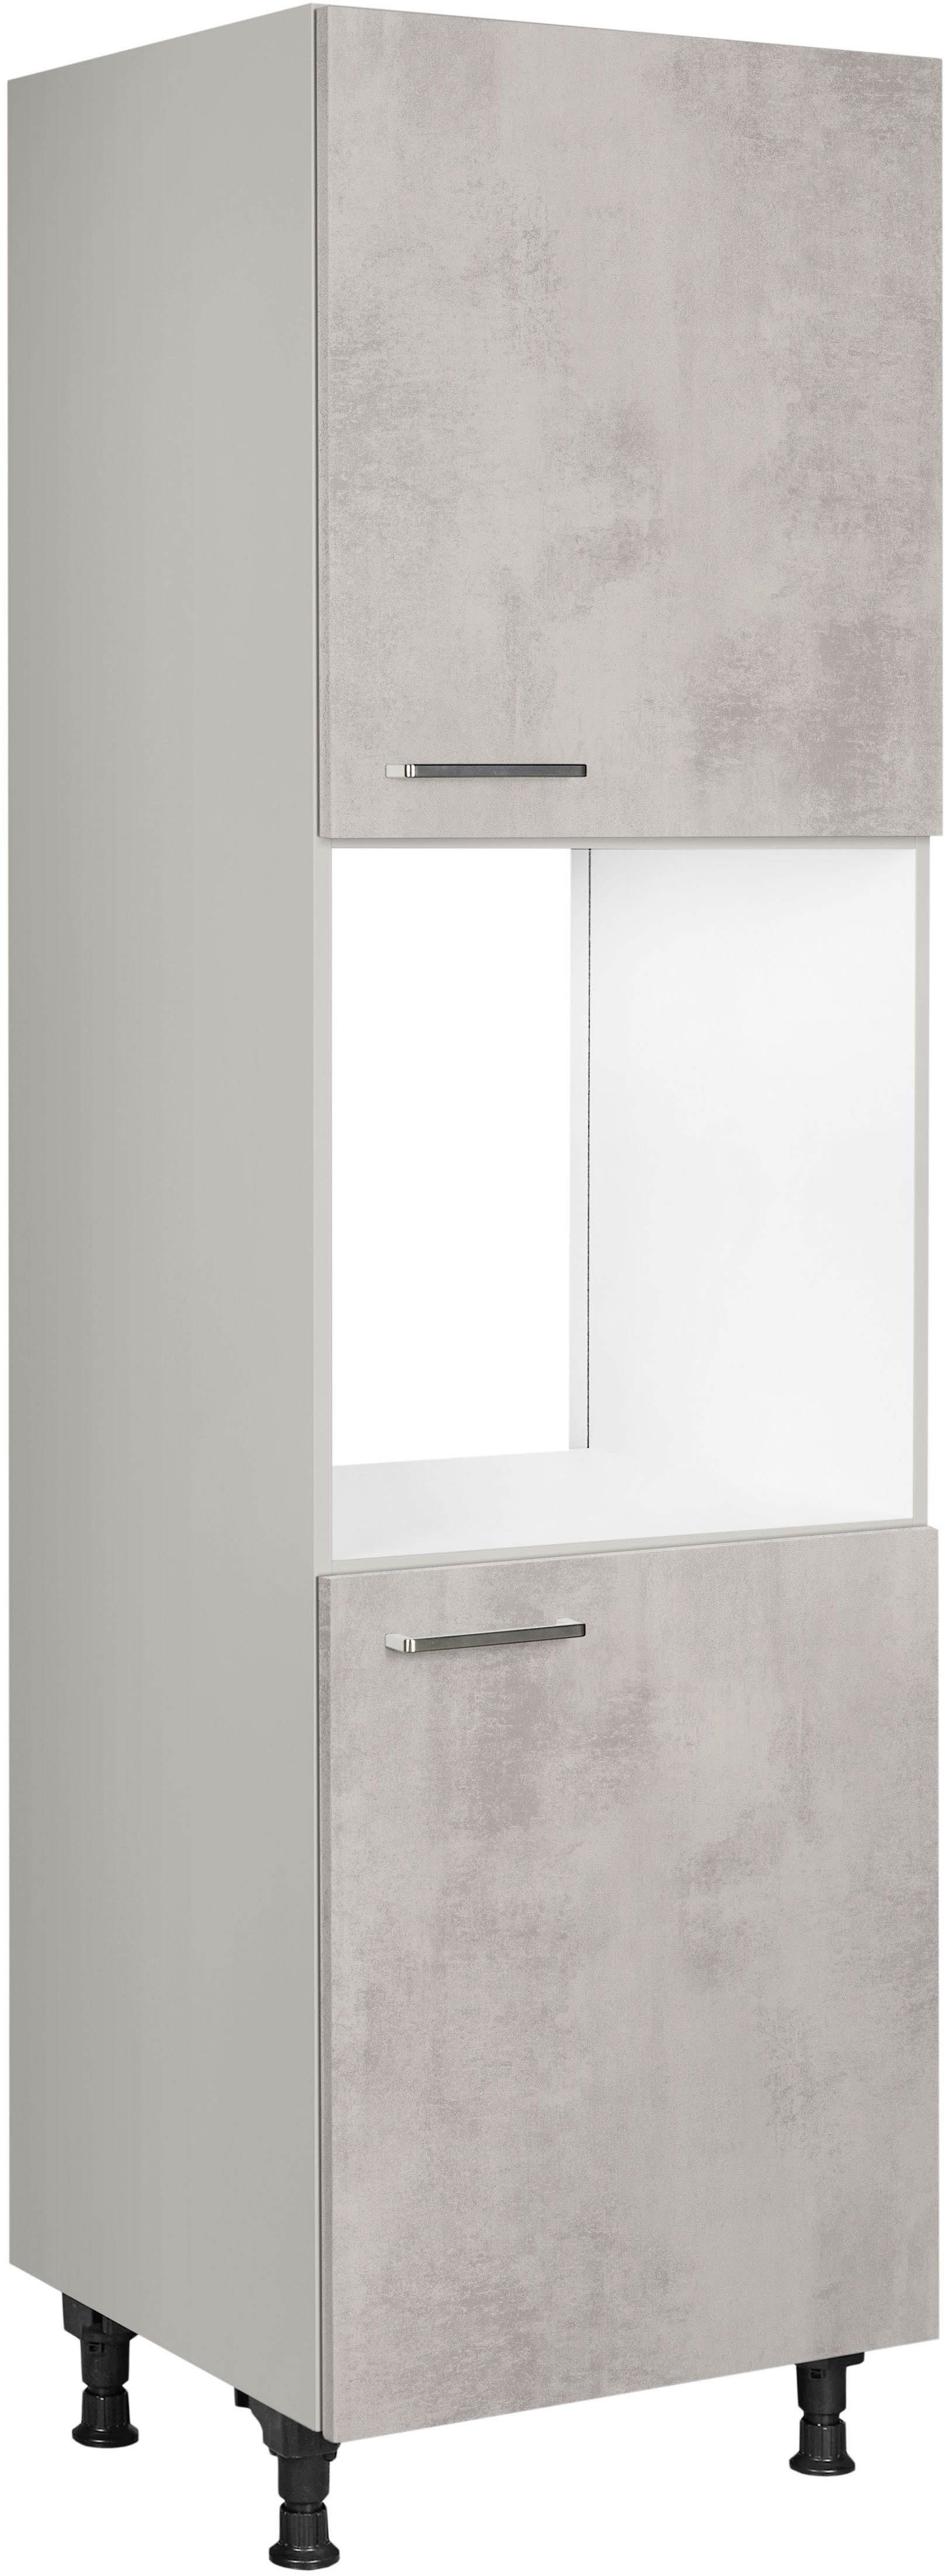 nobilia® Herdumbauschrank "Riva", Ausrichtung wählbar, mit zwei zusätzlichen Türen, vormontiert, Breite/Höhe: 60/167,8 cm